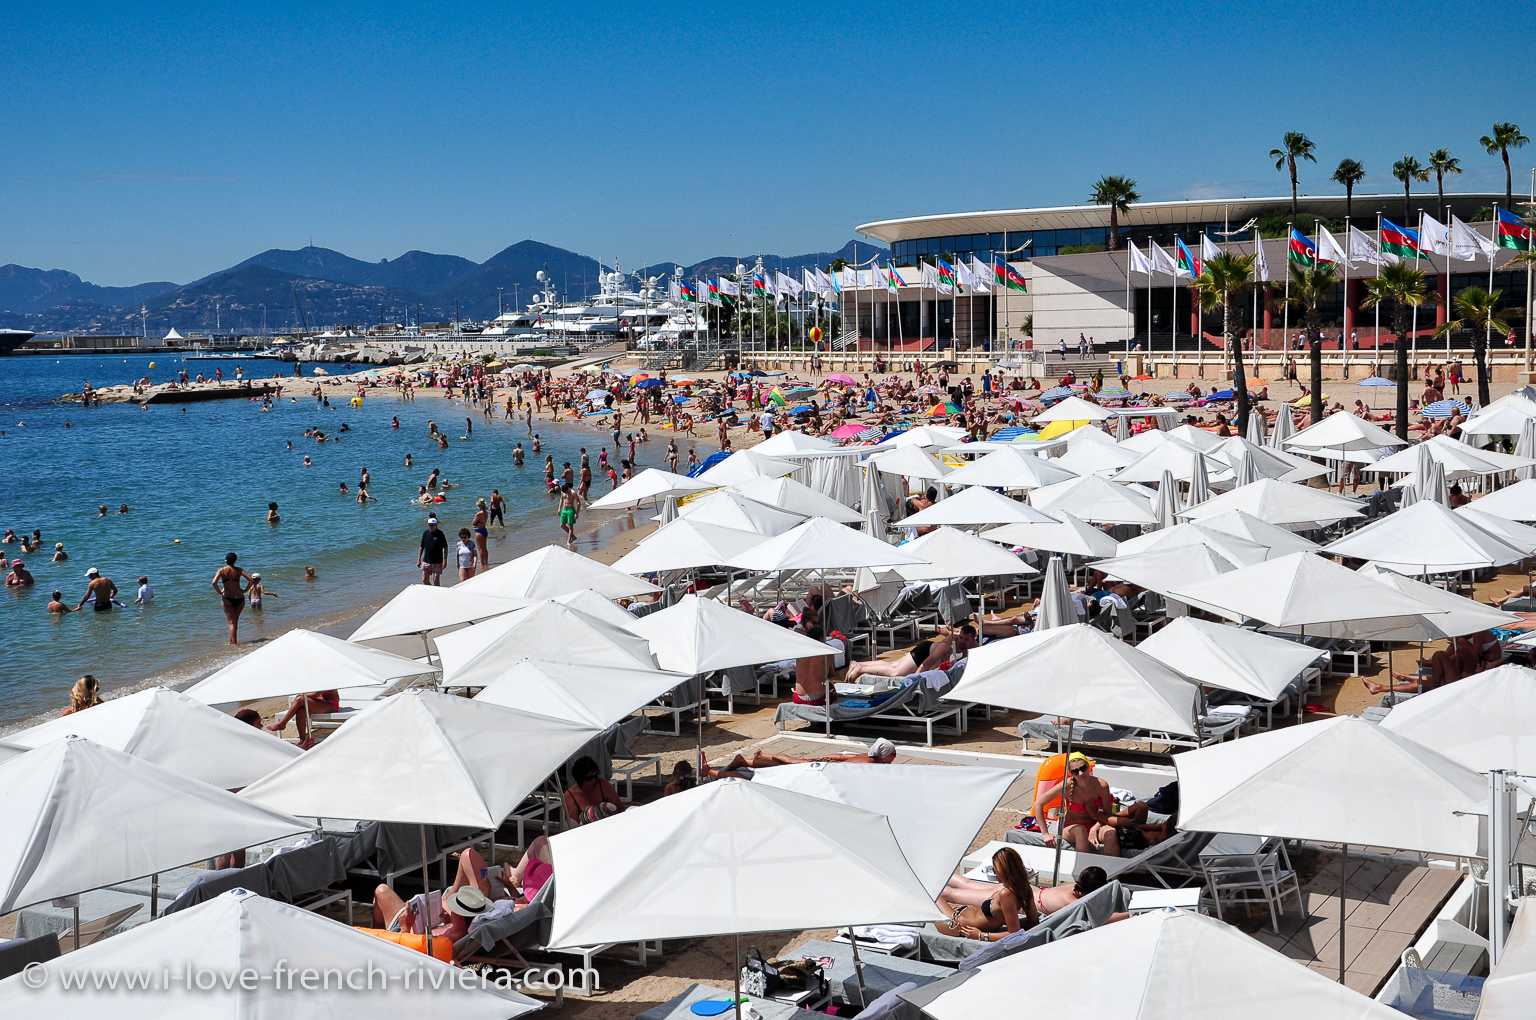 Cannes et son clbre Palais des Congrs, temple du cinma, la Croisette et ses plages, sont facilement accessibles depuis La Napoule. Bus #22 en face de notre location de vacances.